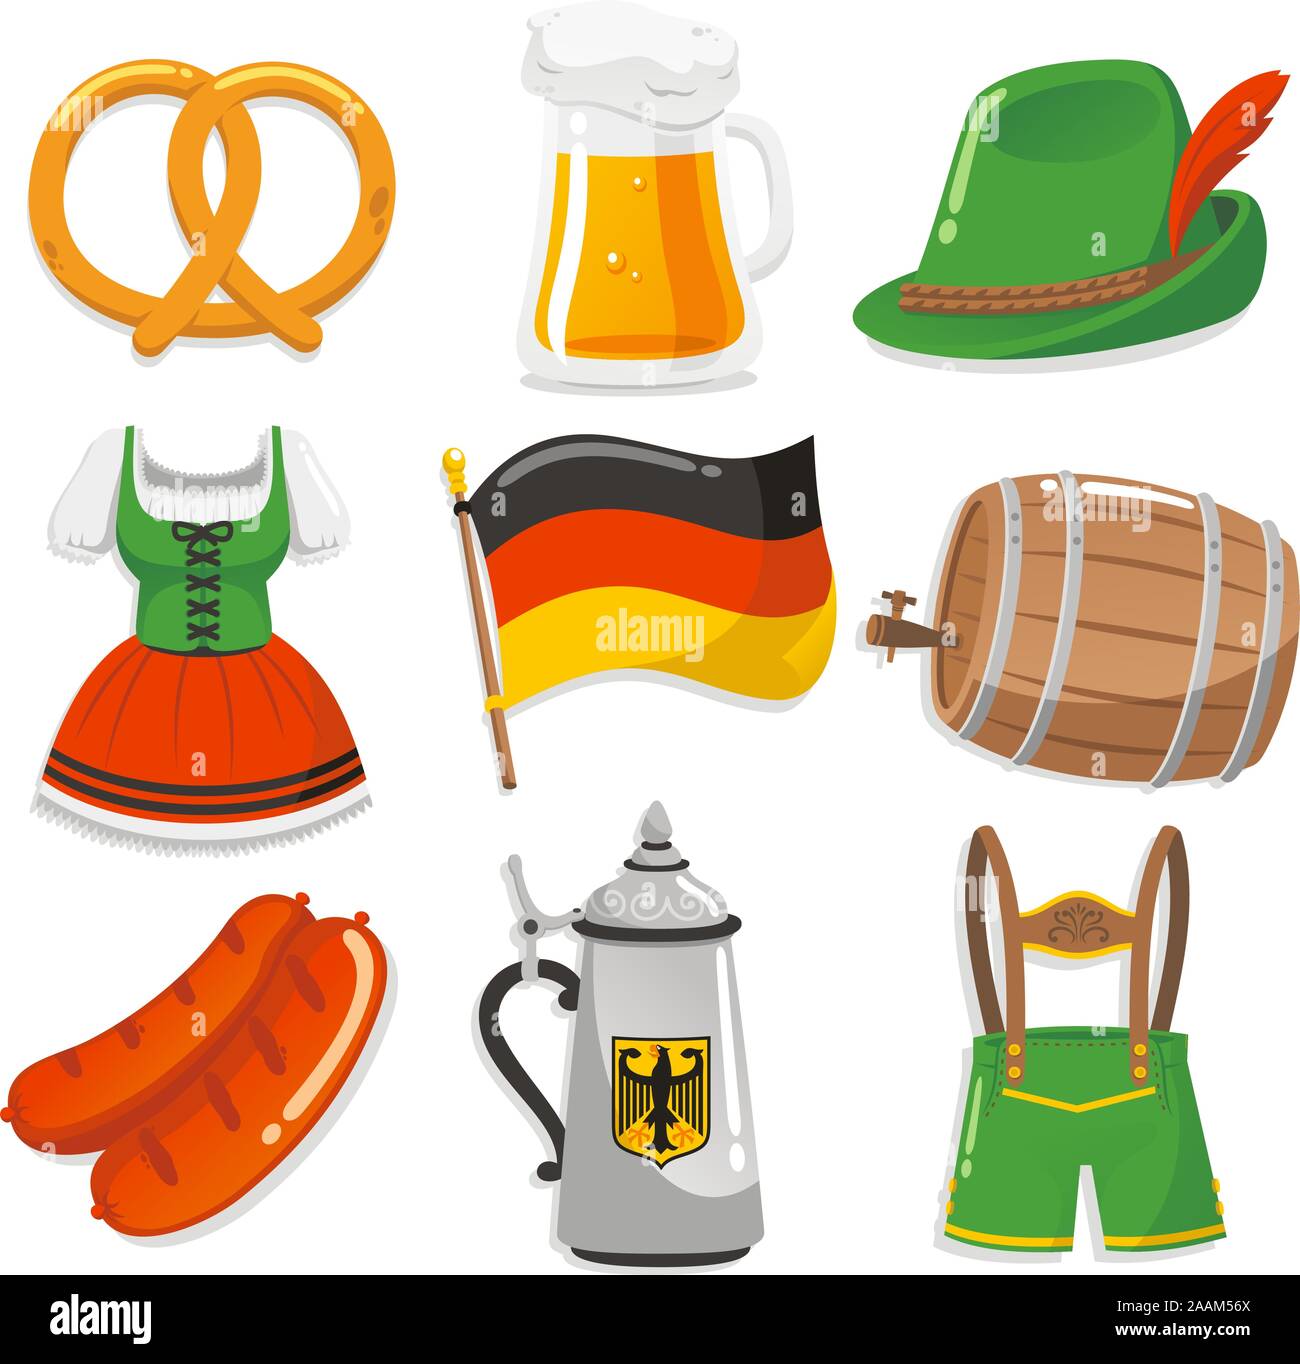 Oktoberfest Design Elemente Symbole, mit Brezel, Bier hacken, Tyrollean hut mit feder, kurze Kellnerin Kleid, Deutsche Flagge, Barrel Bier, Würstchen, Kellner Stock Vektor